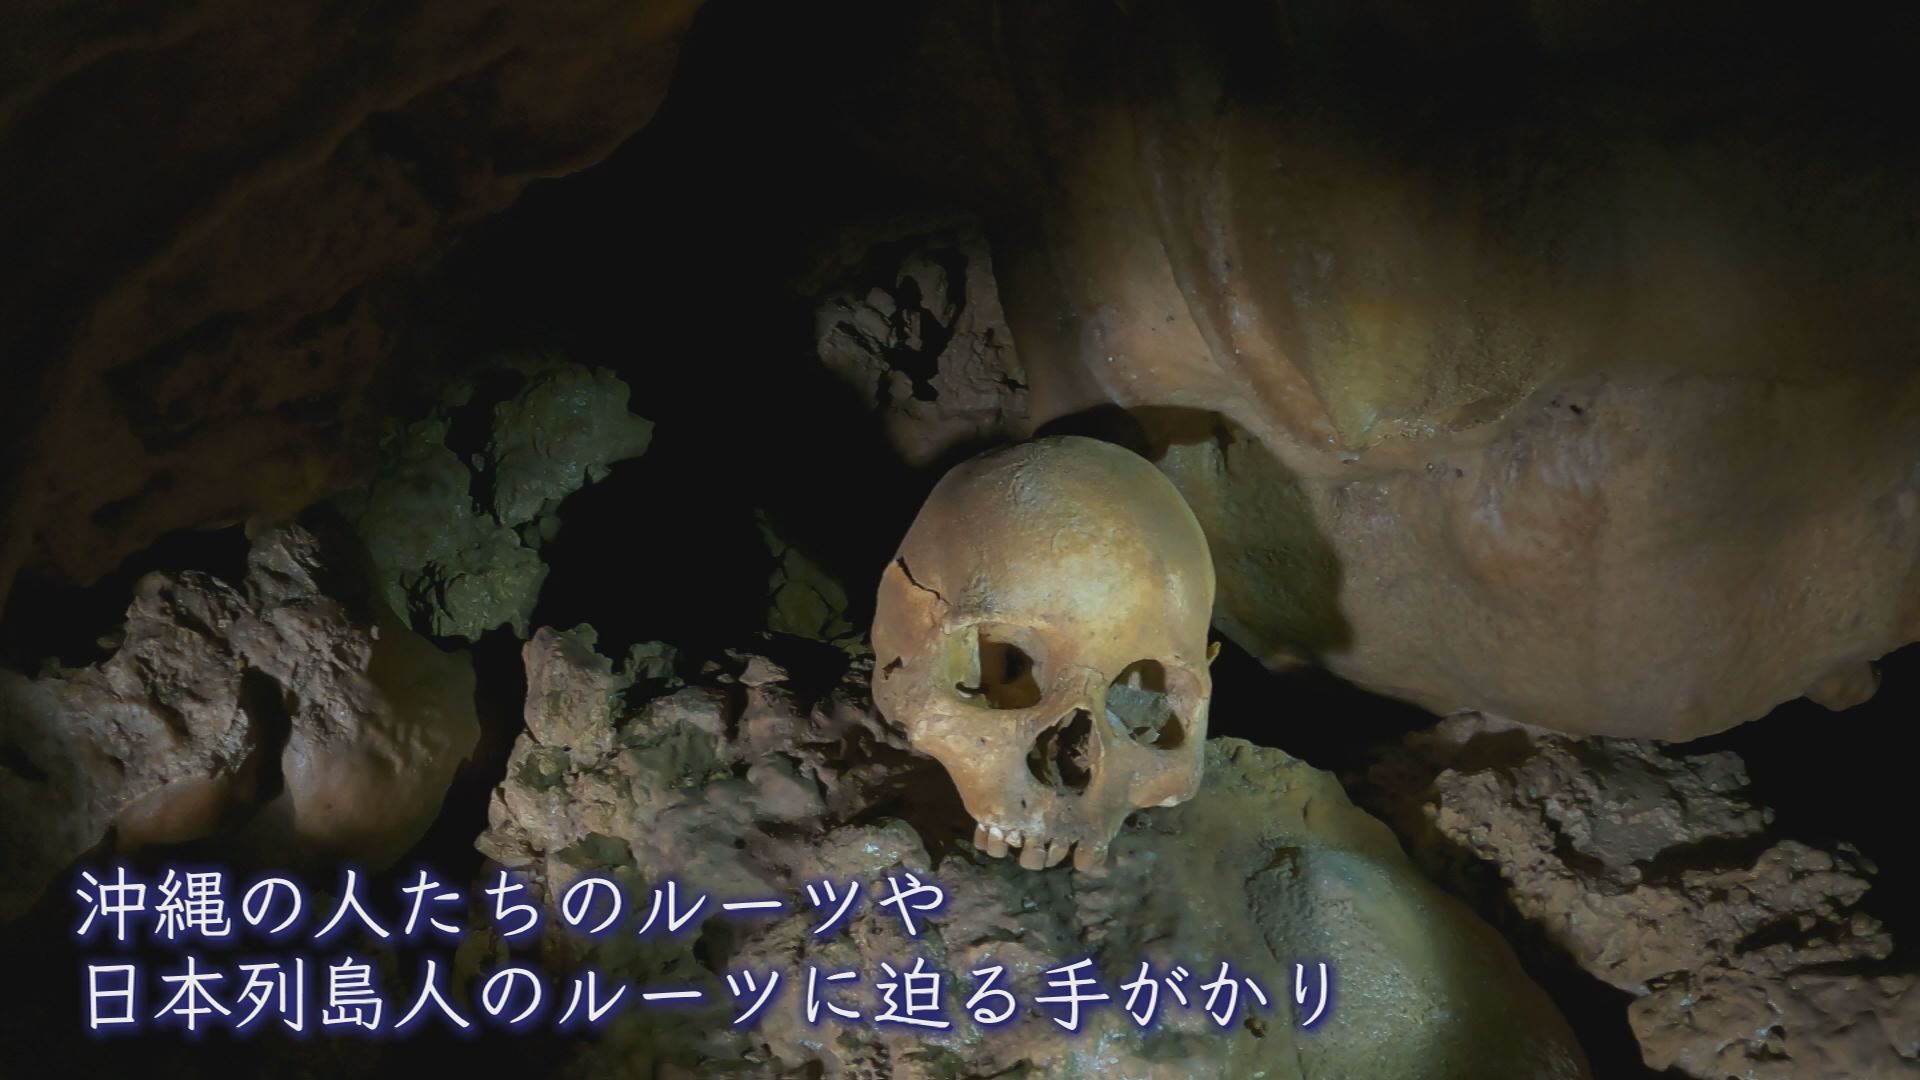 沖縄の洞窟で見つかる古代人の頭蓋骨・手足の骨･･･ なぜ朽ちずに残るのか